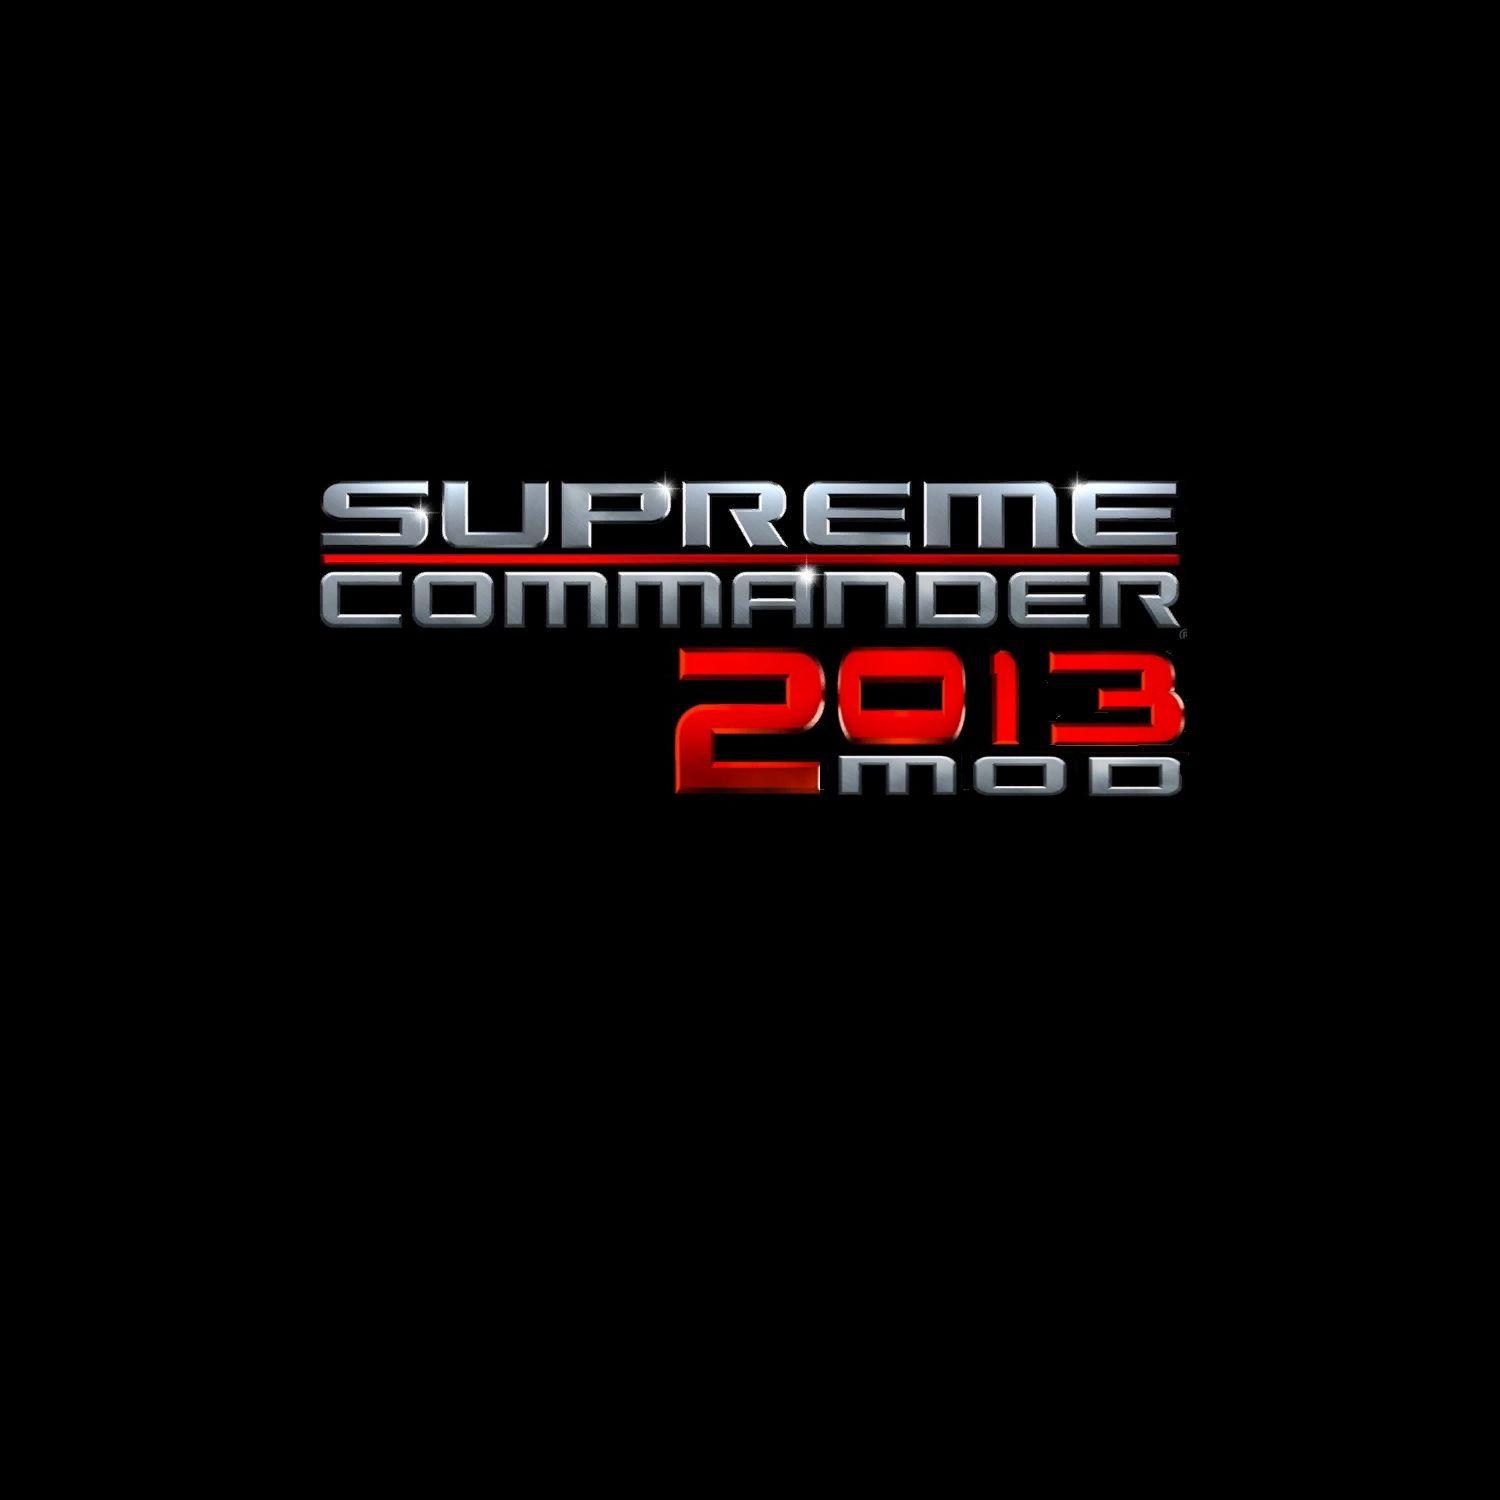 Supreme Commander Logo - Supreme Commander 2 0 1 3 Mod Logos image